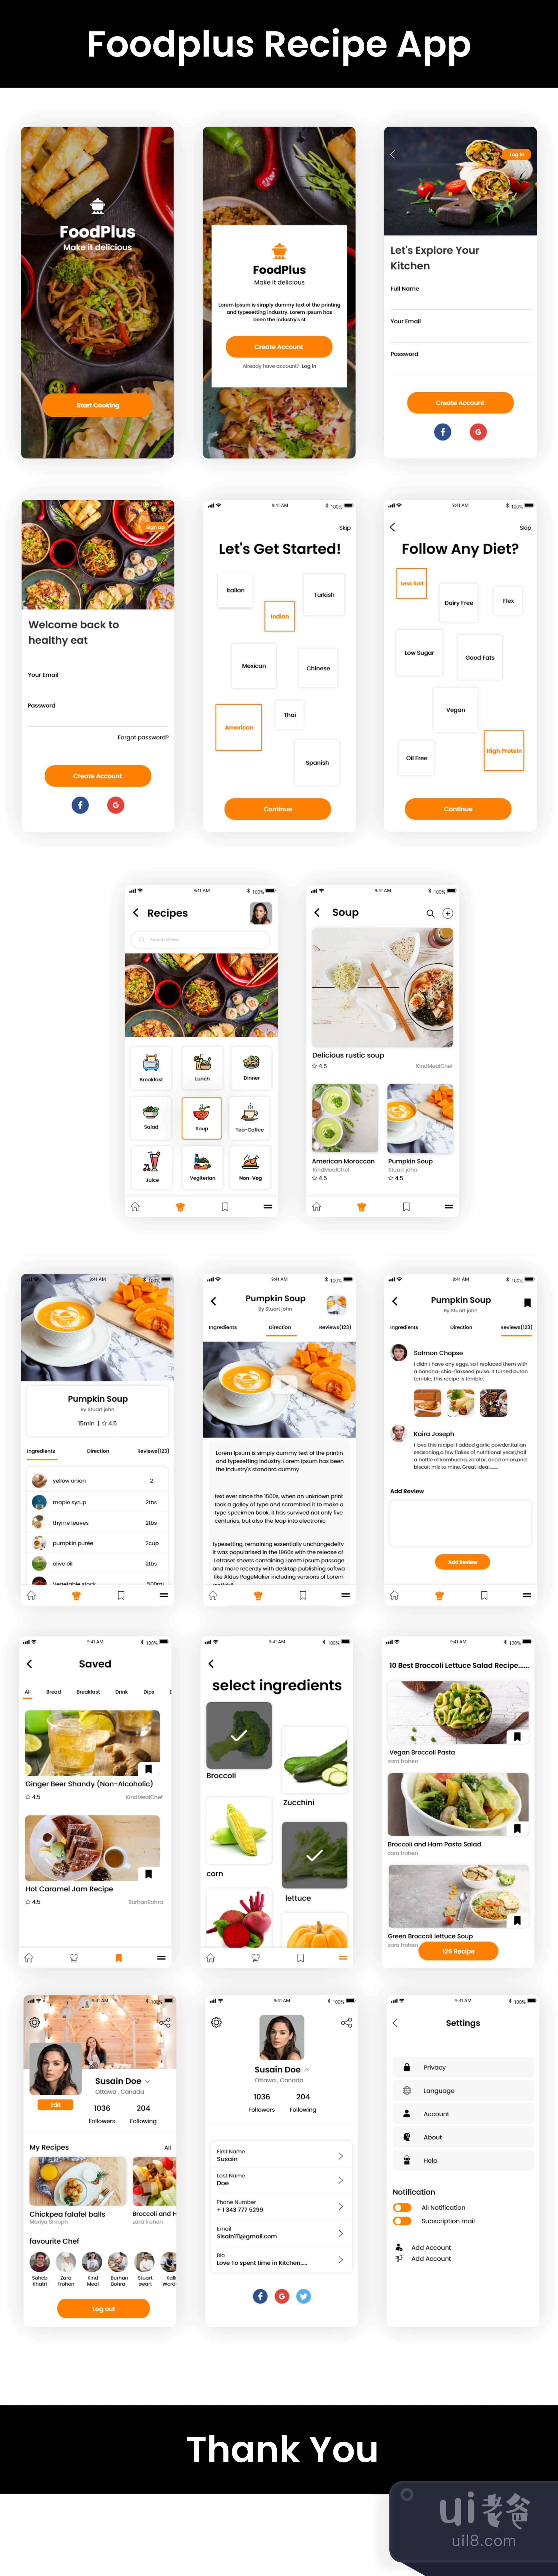 食品配方应用程序 (FoodPlus Recipe App)插图